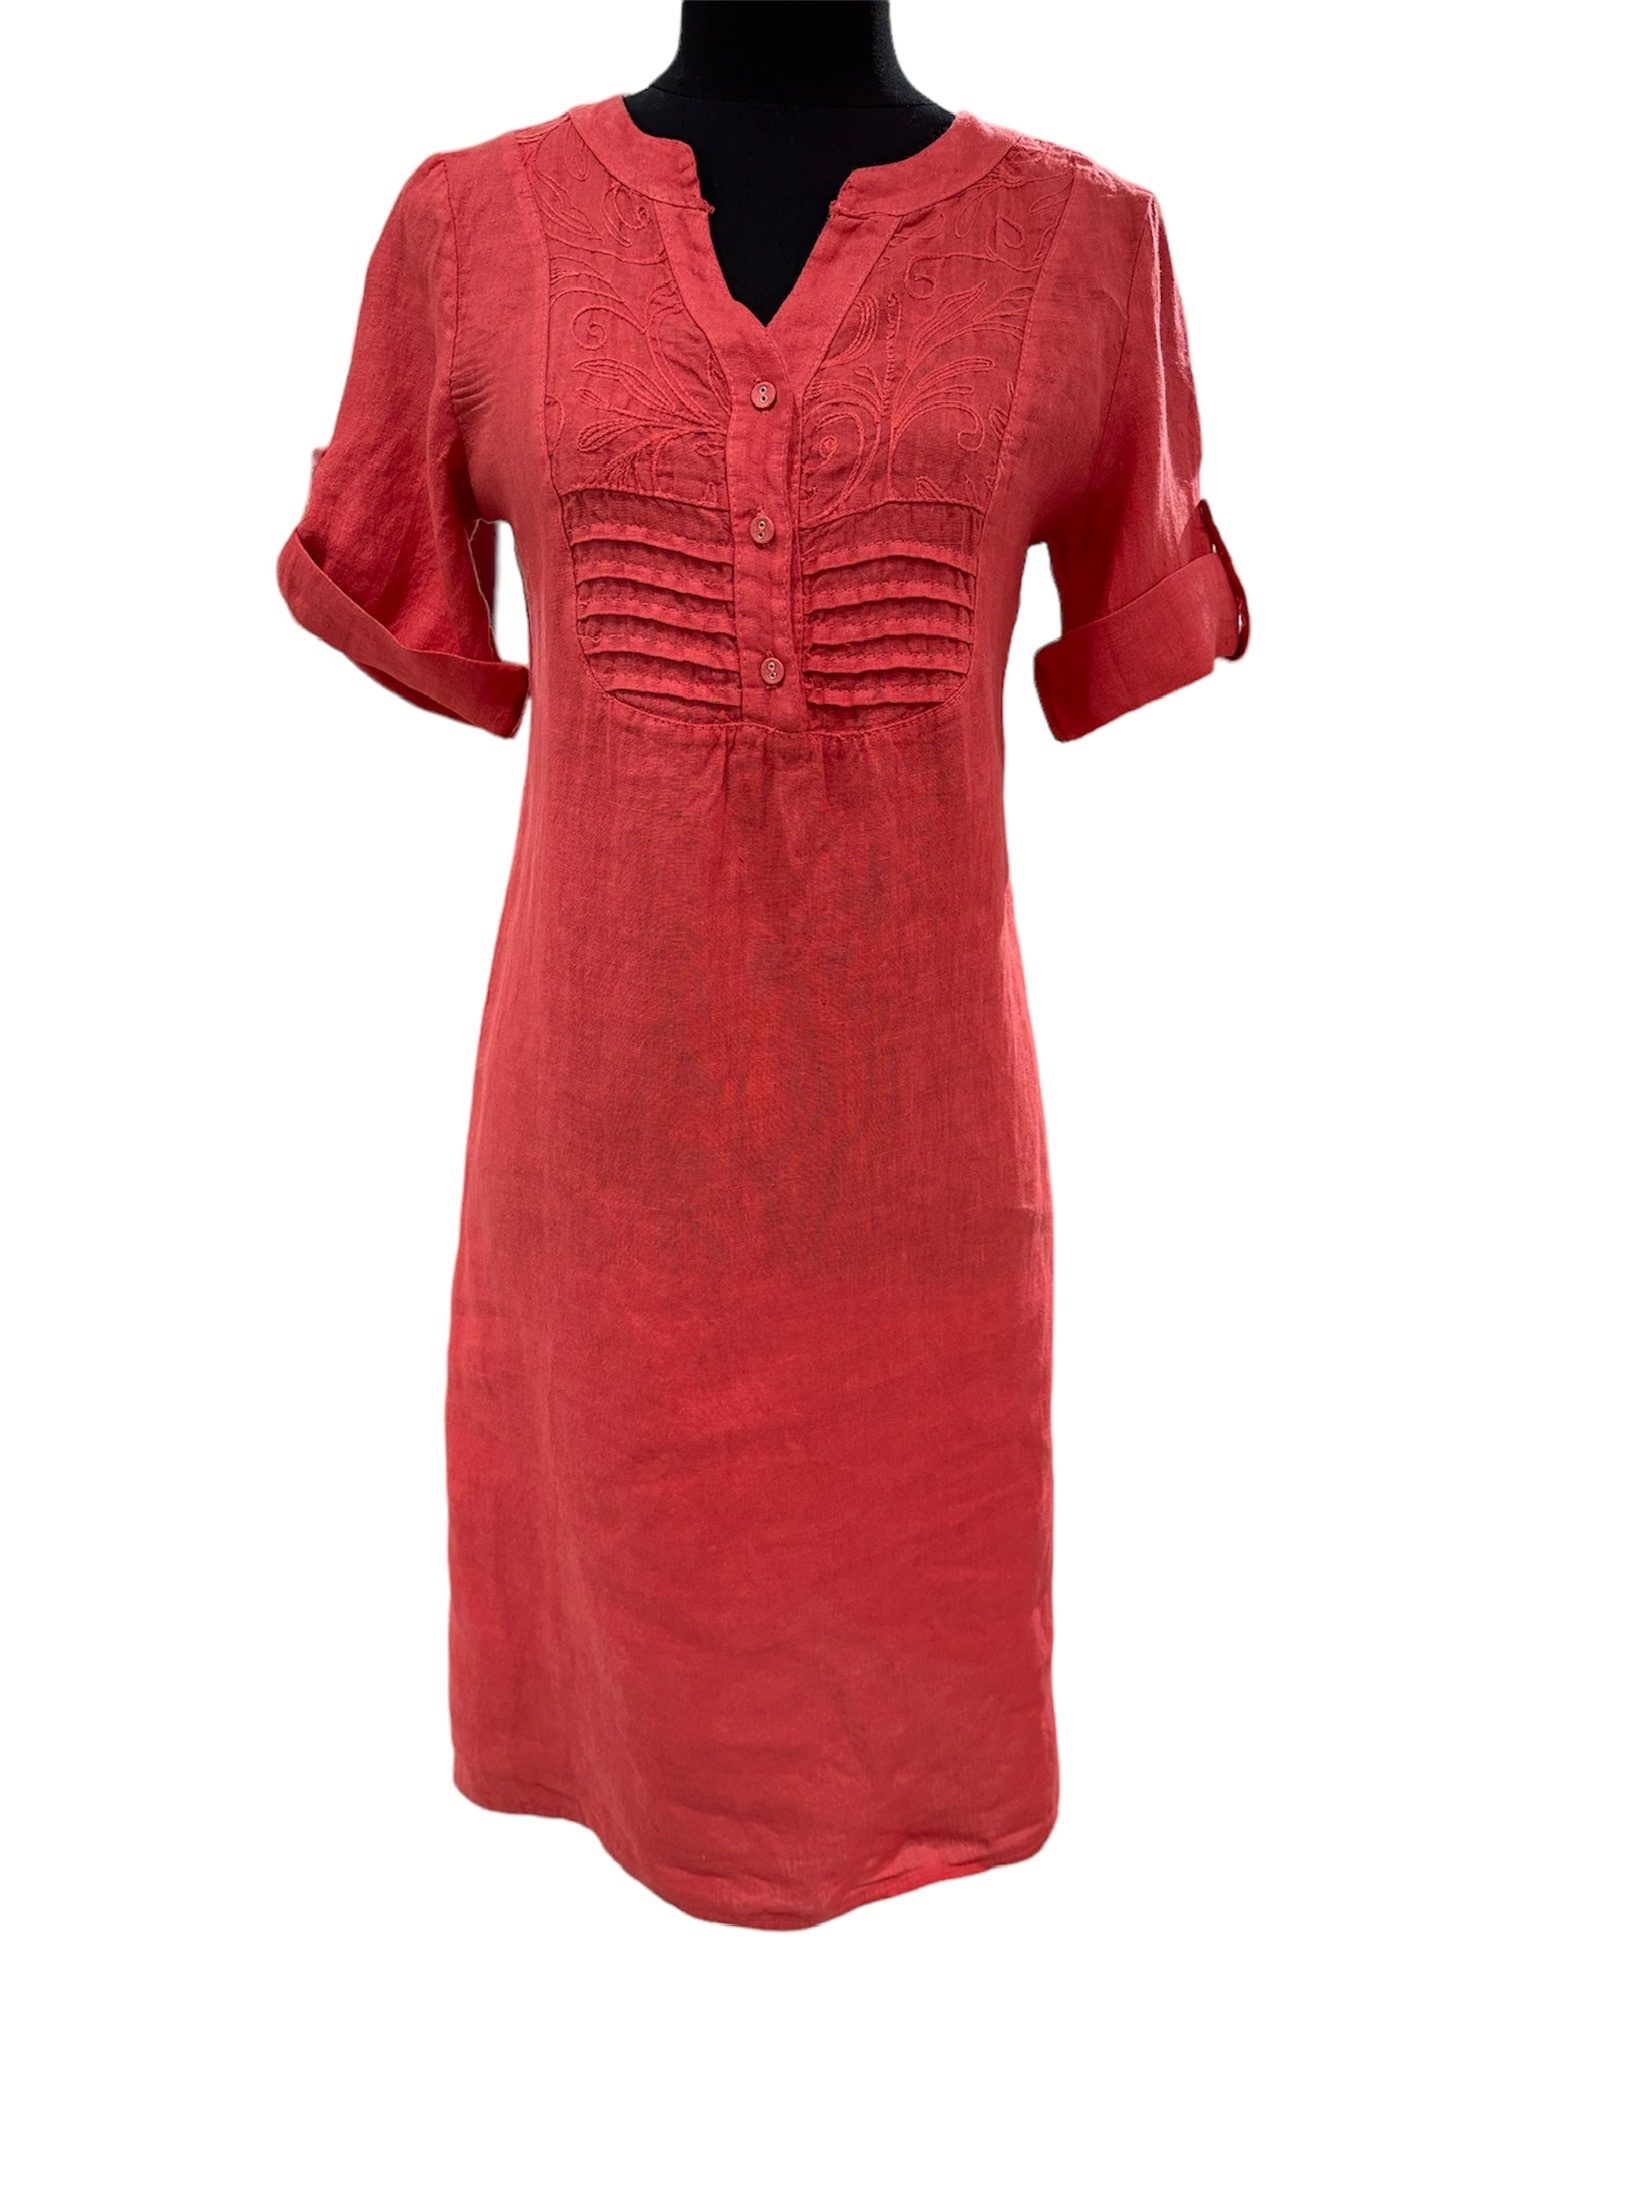 Mooi 100% linnen jurk met korte mouwen - broderie - knoppen - elastische rug - ROOD kleur - maat 42